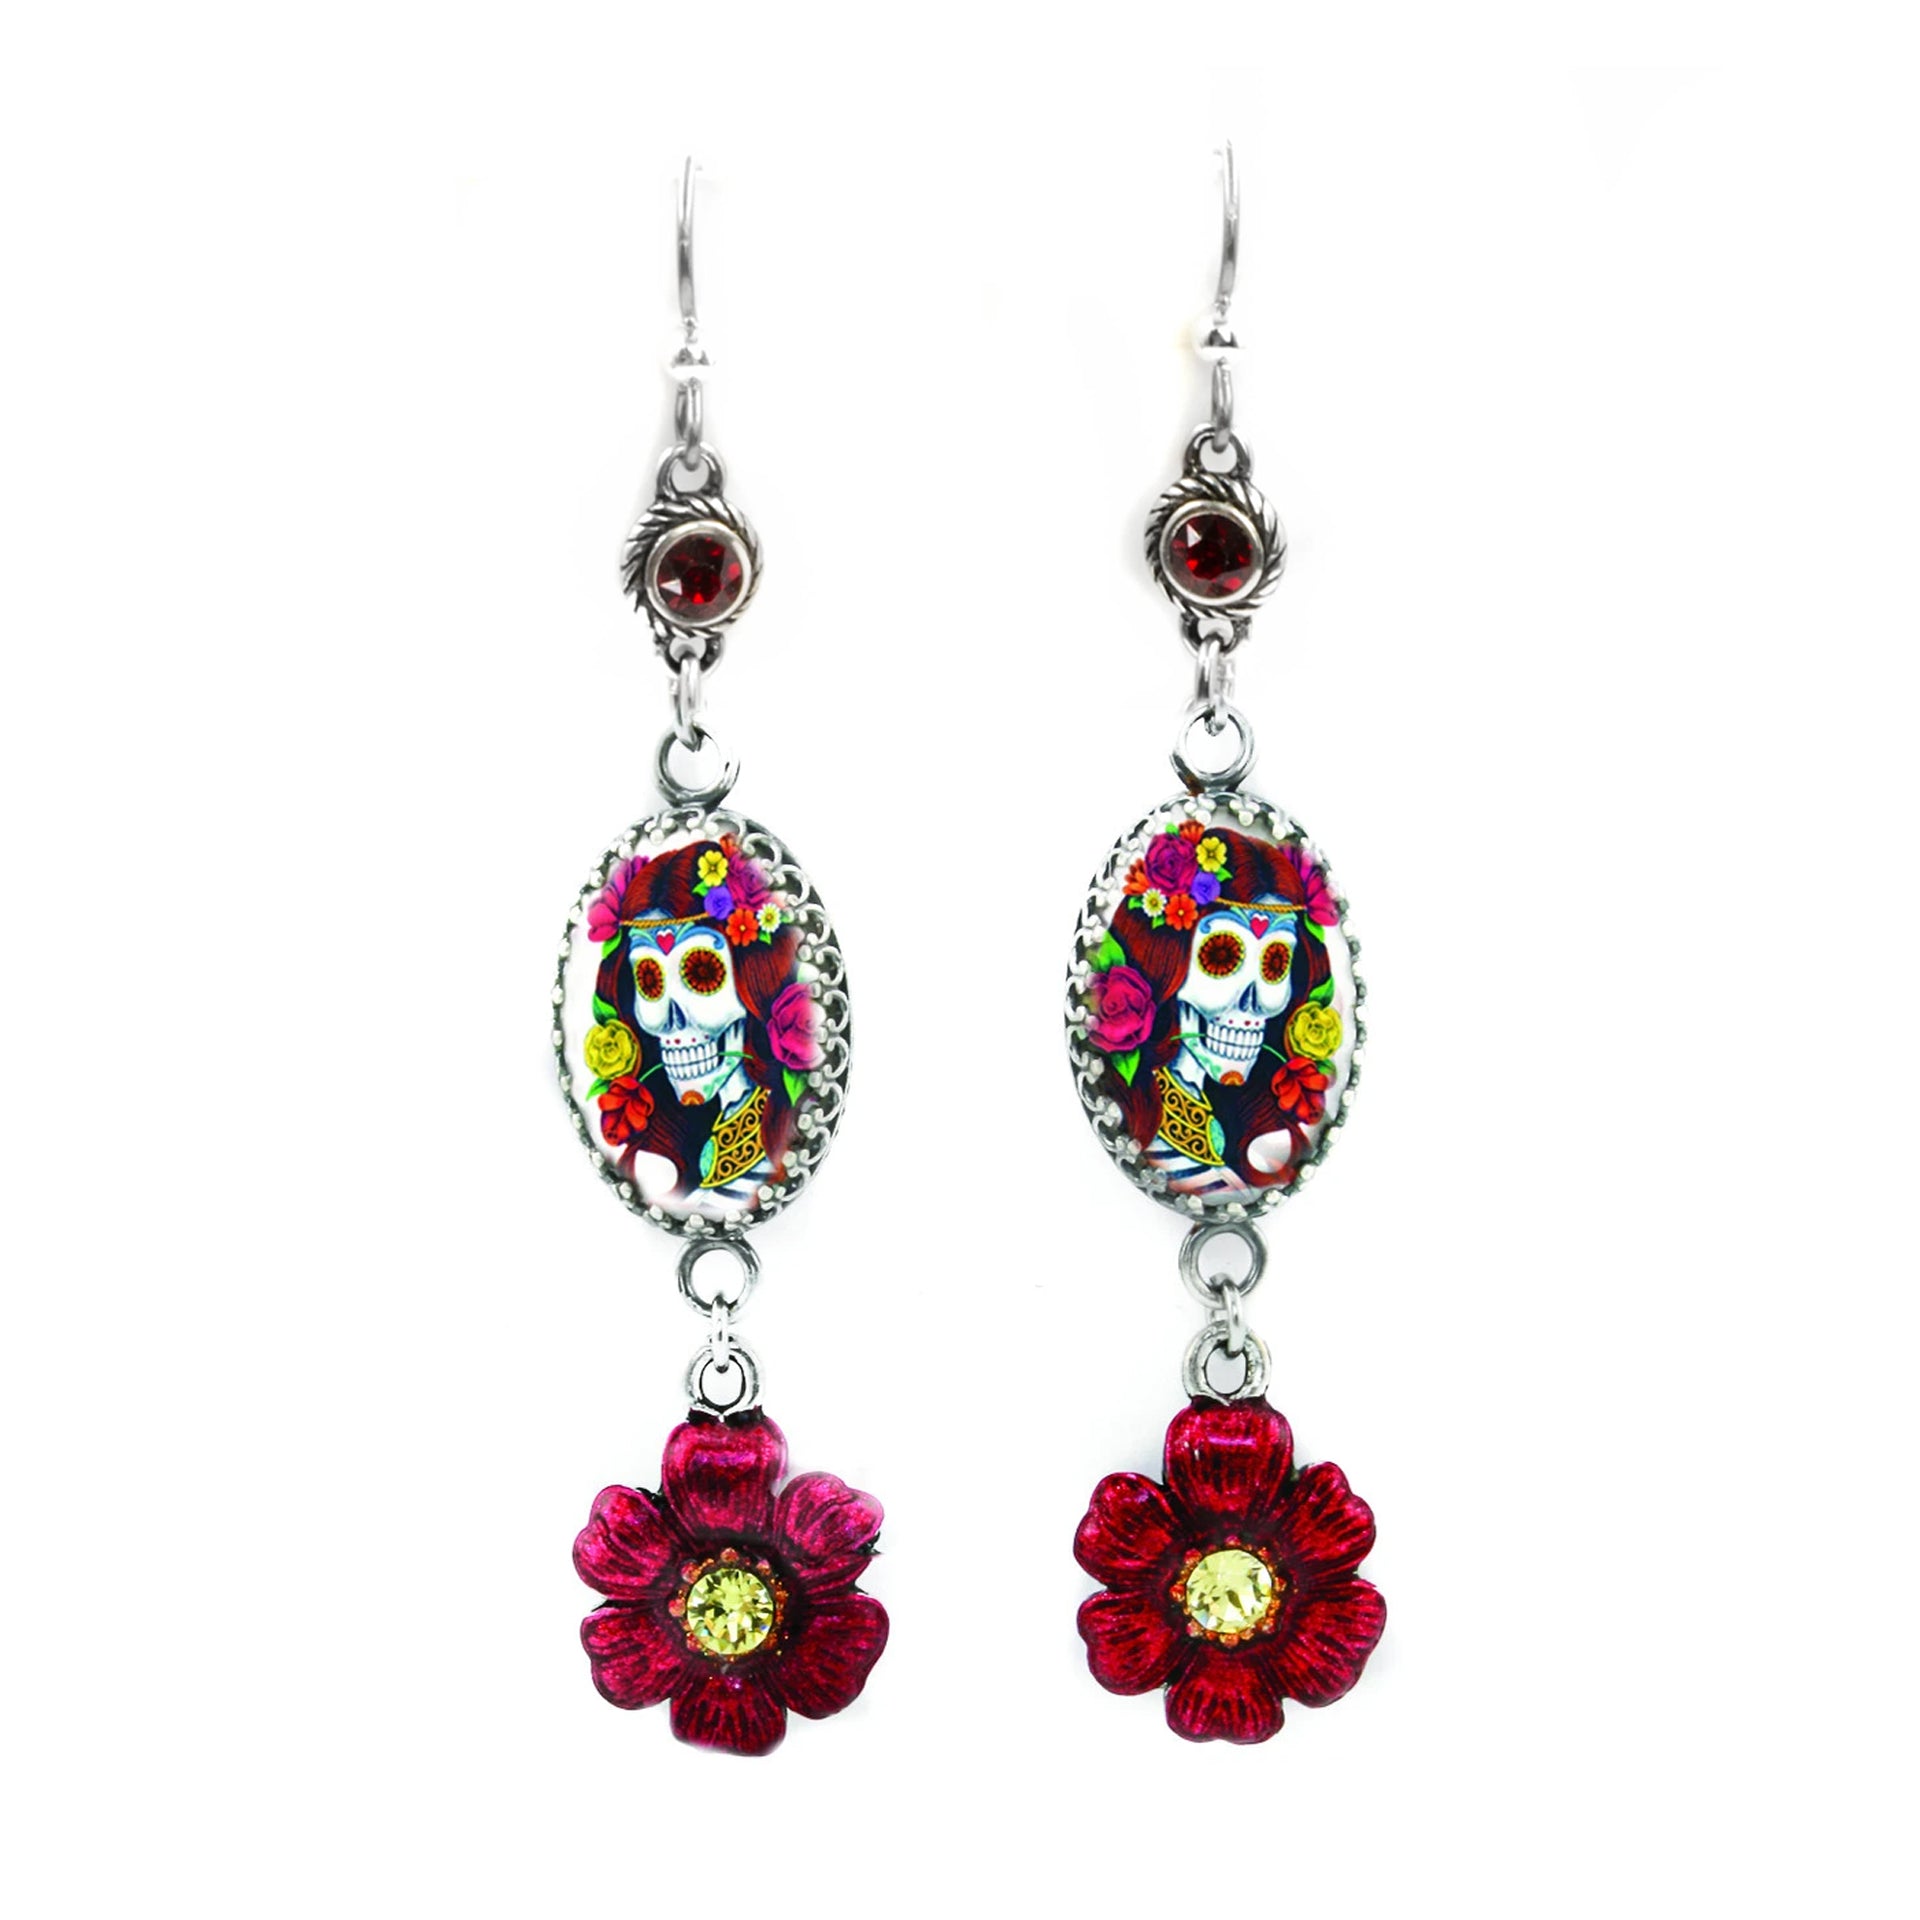 sugar skull earrings with flowers